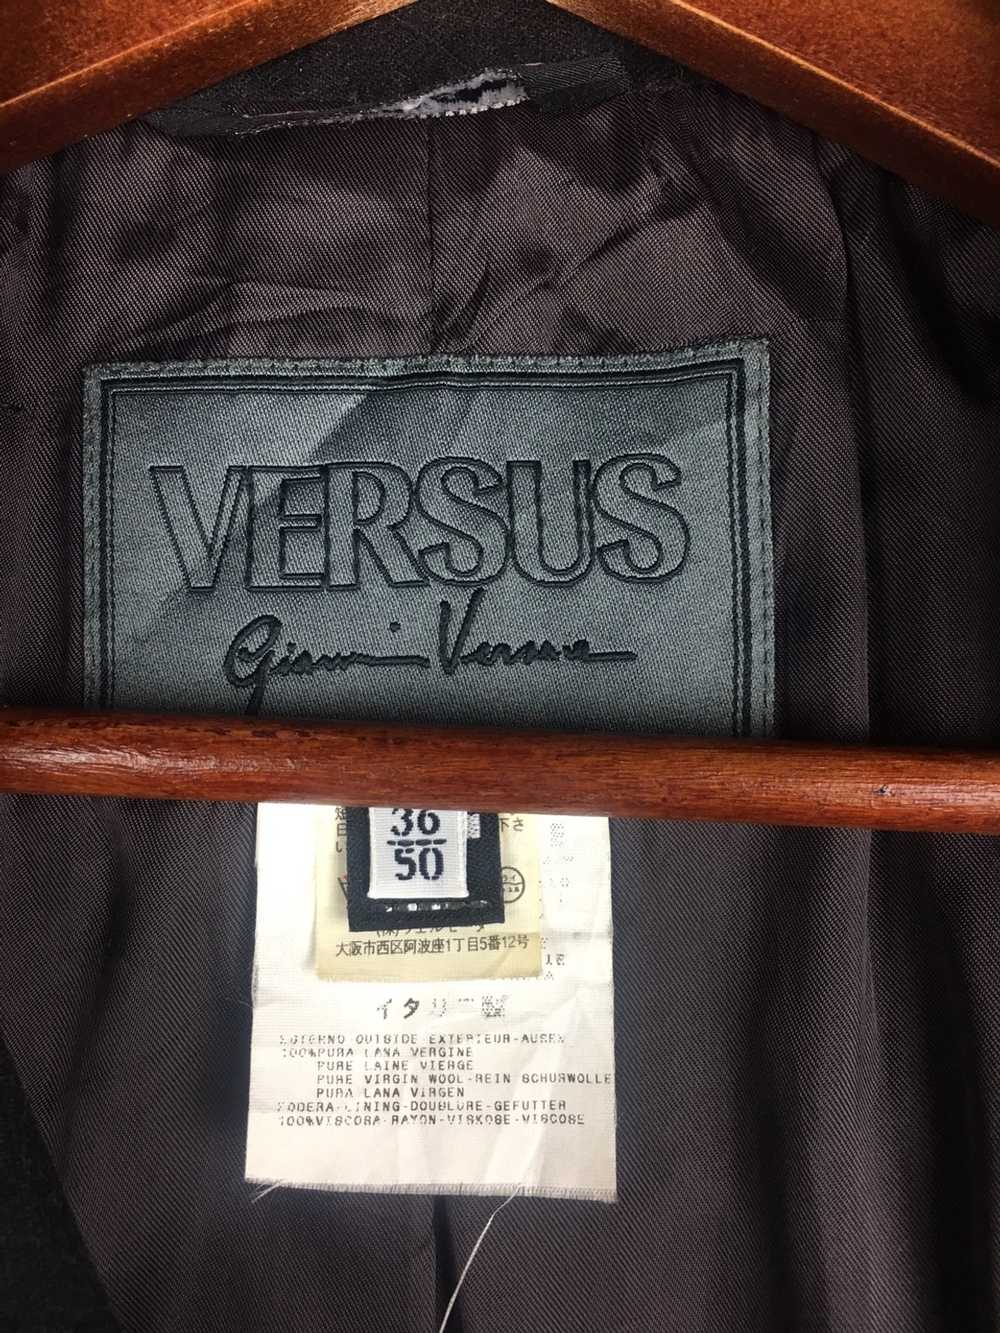 Versus Versace Versus Giani Versace Jacket - image 4